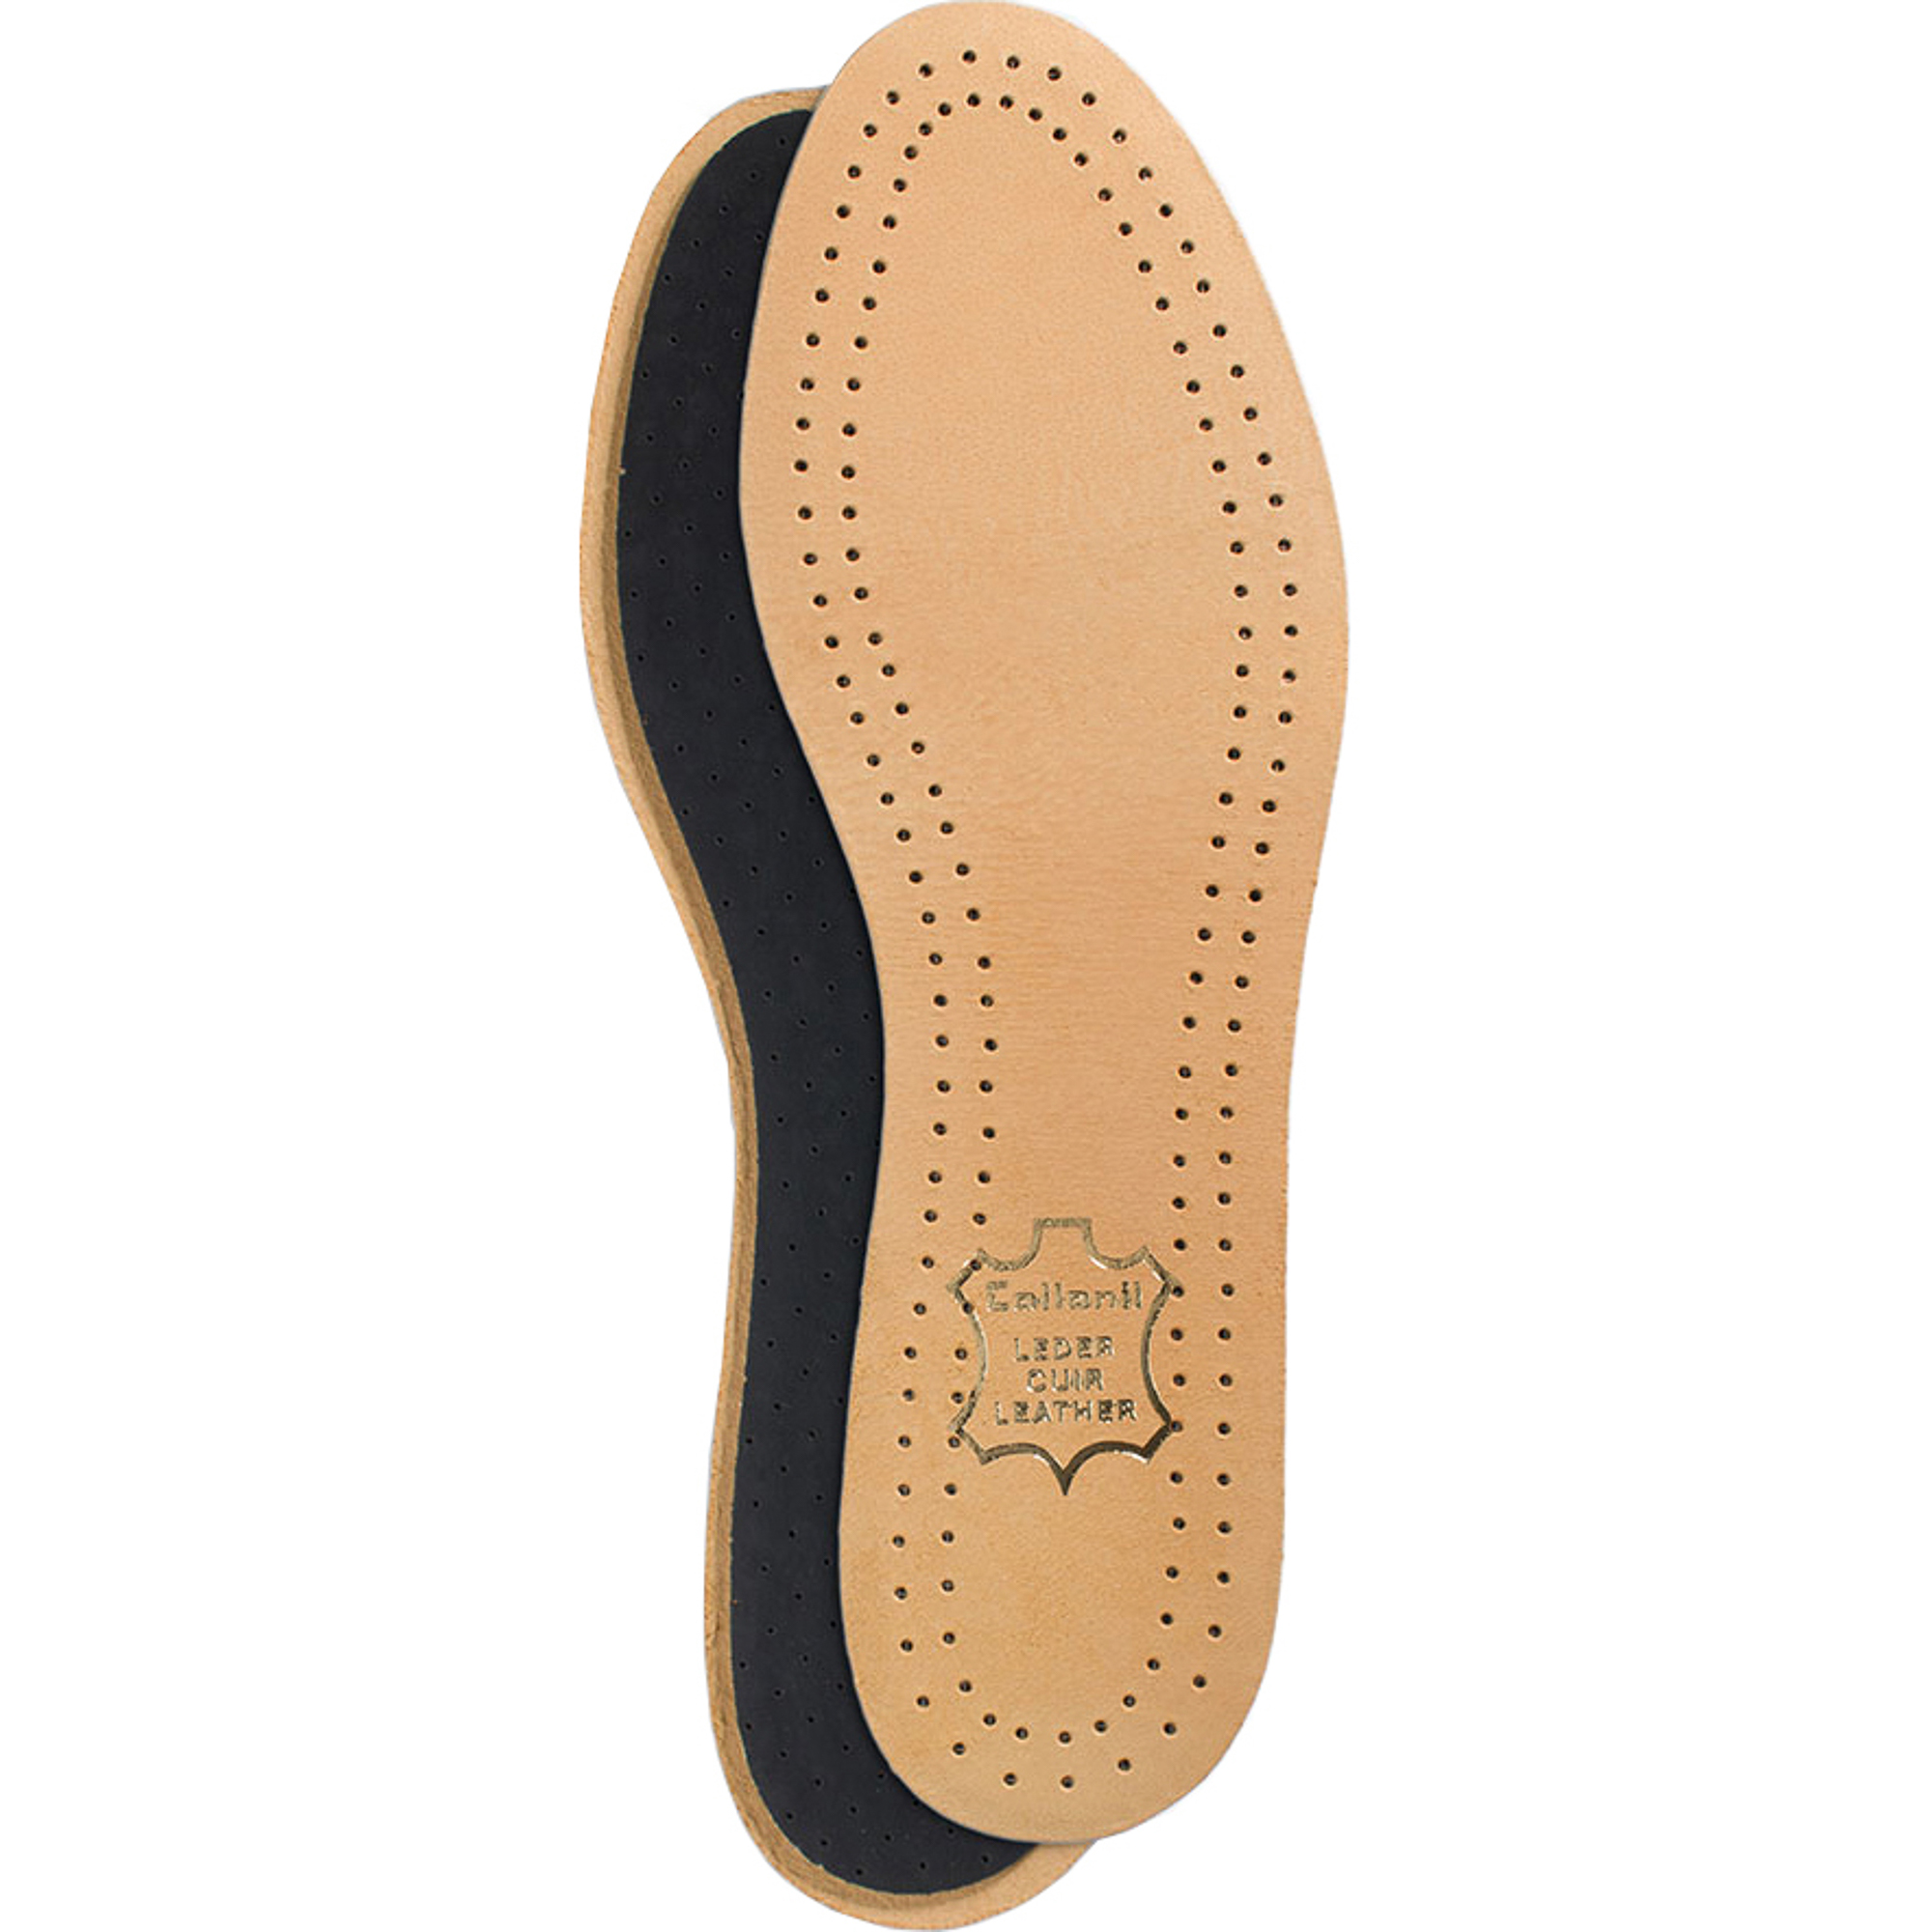 Стельки для обуви Collonil Luxor размер 45 стельки scholl gelactiv для открытой обуви